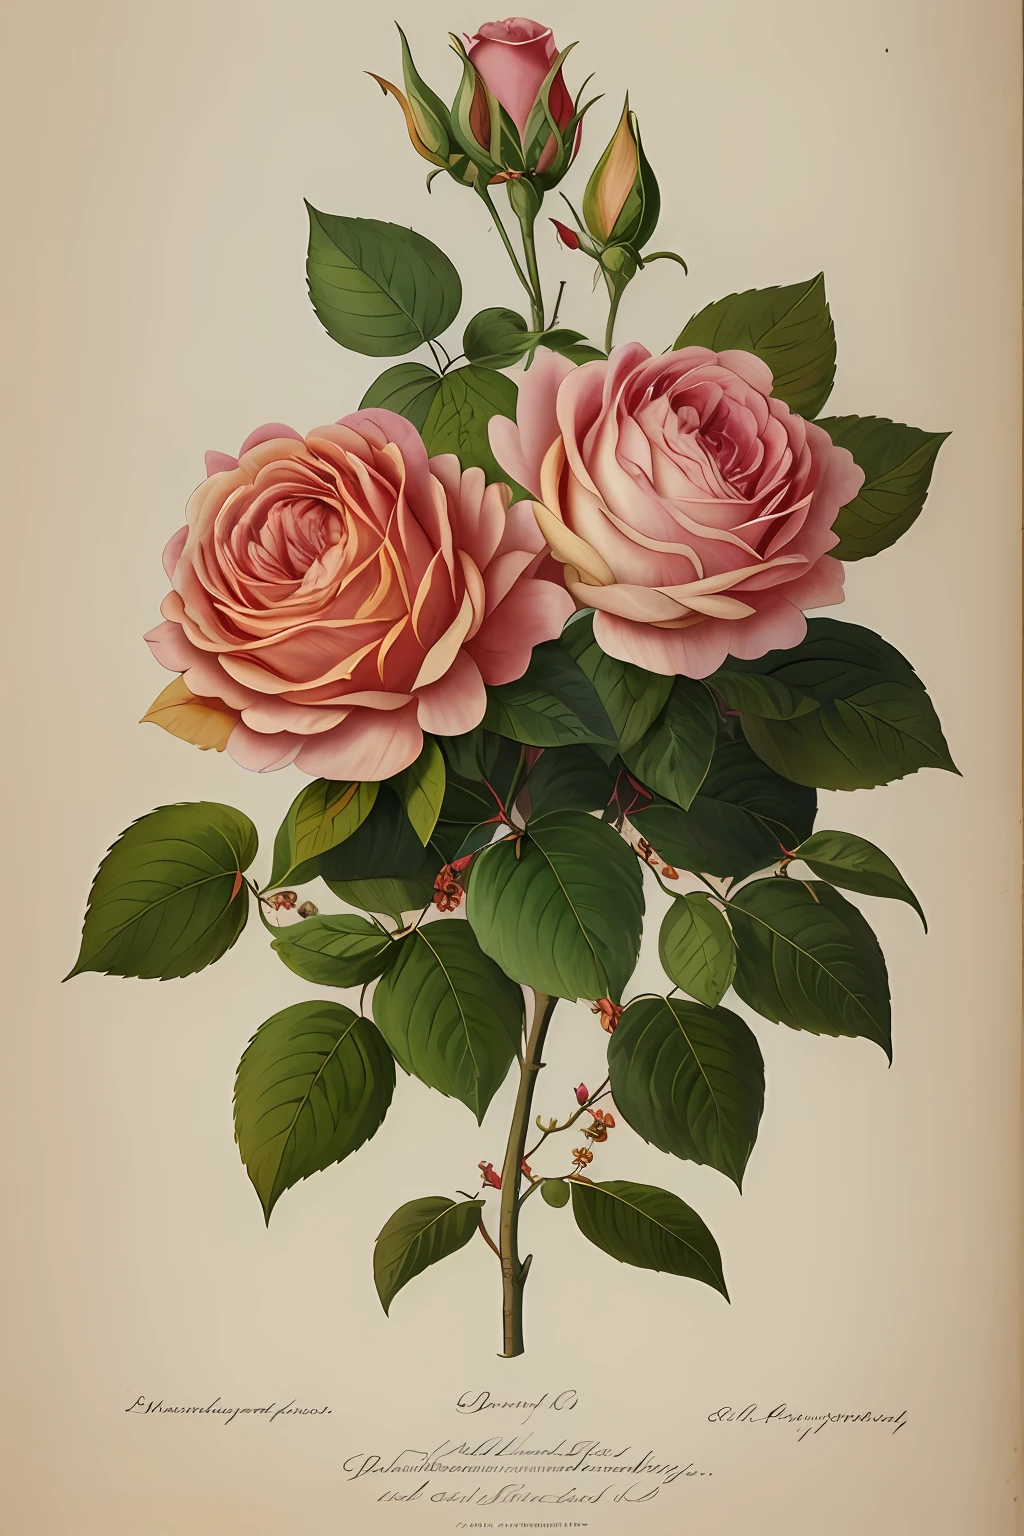 (最高品質:1.2), (詳細:1.2), (傑作:1.2), ラージプロヴァンスローズのヴィンテージ植物イラスト (1770 1775) 高解像度のジョン・エドワーズ